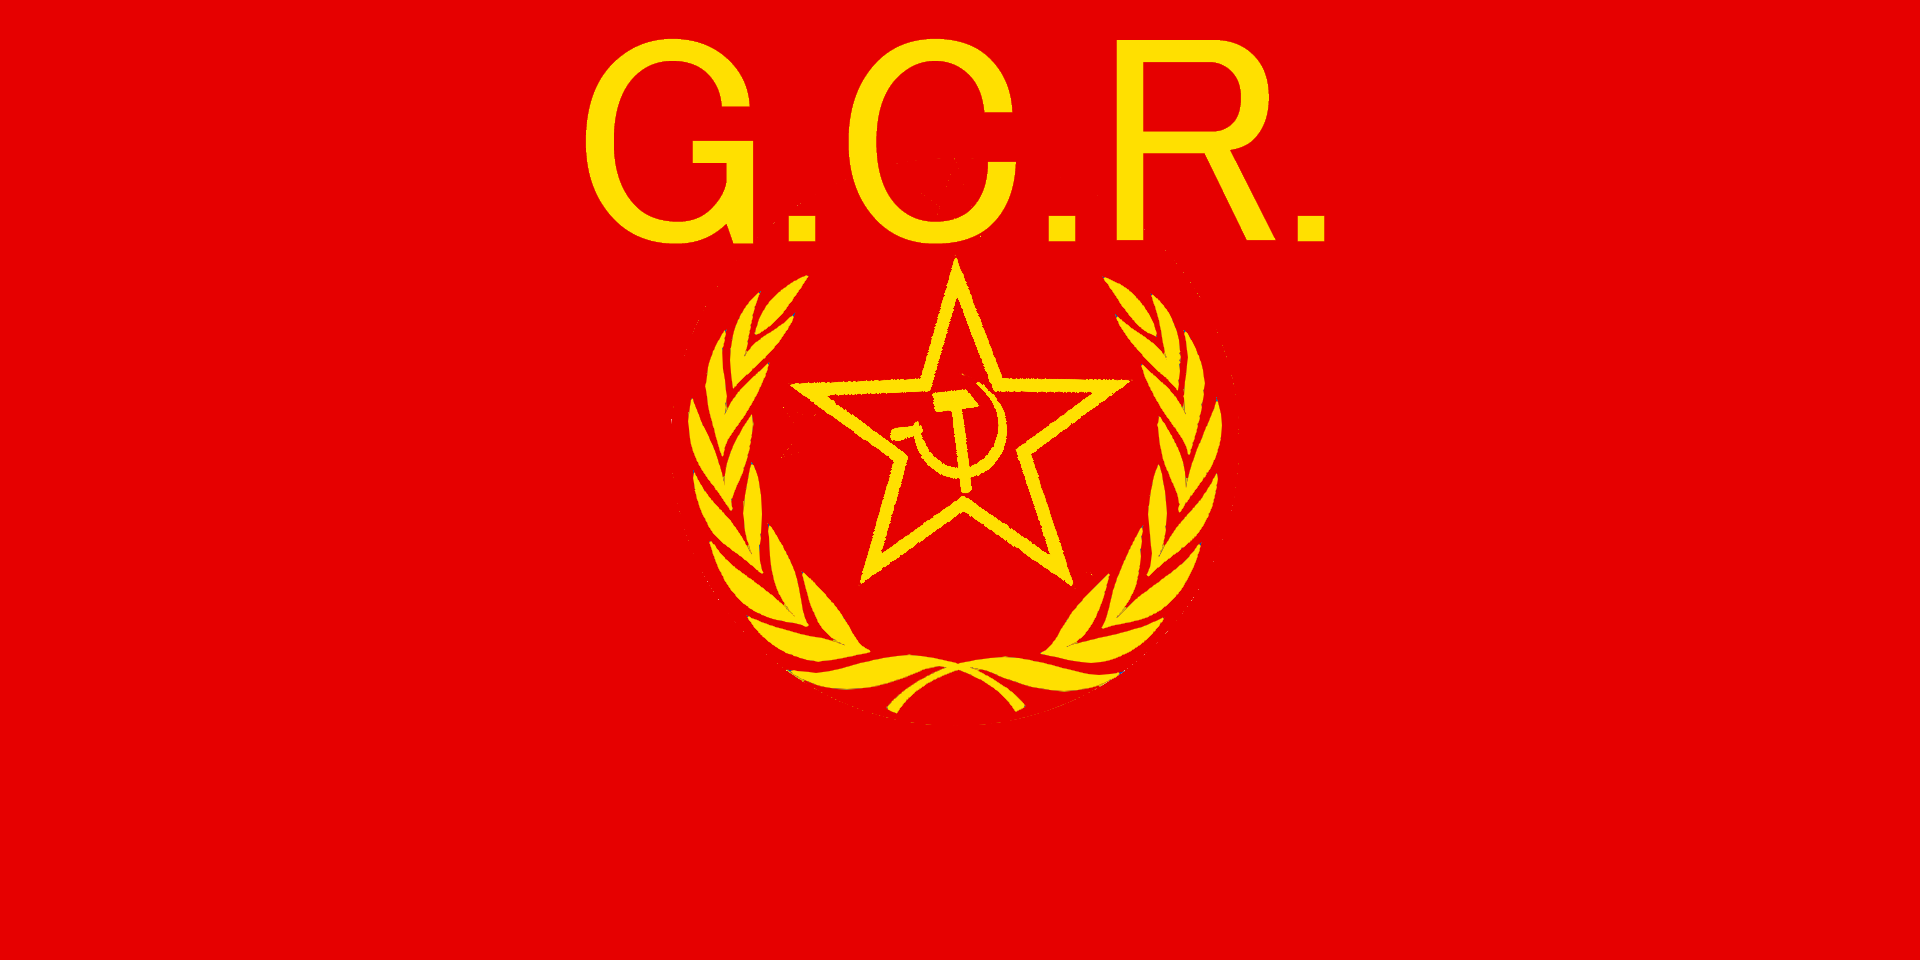 グーダー労働者政府旗_0.PNG